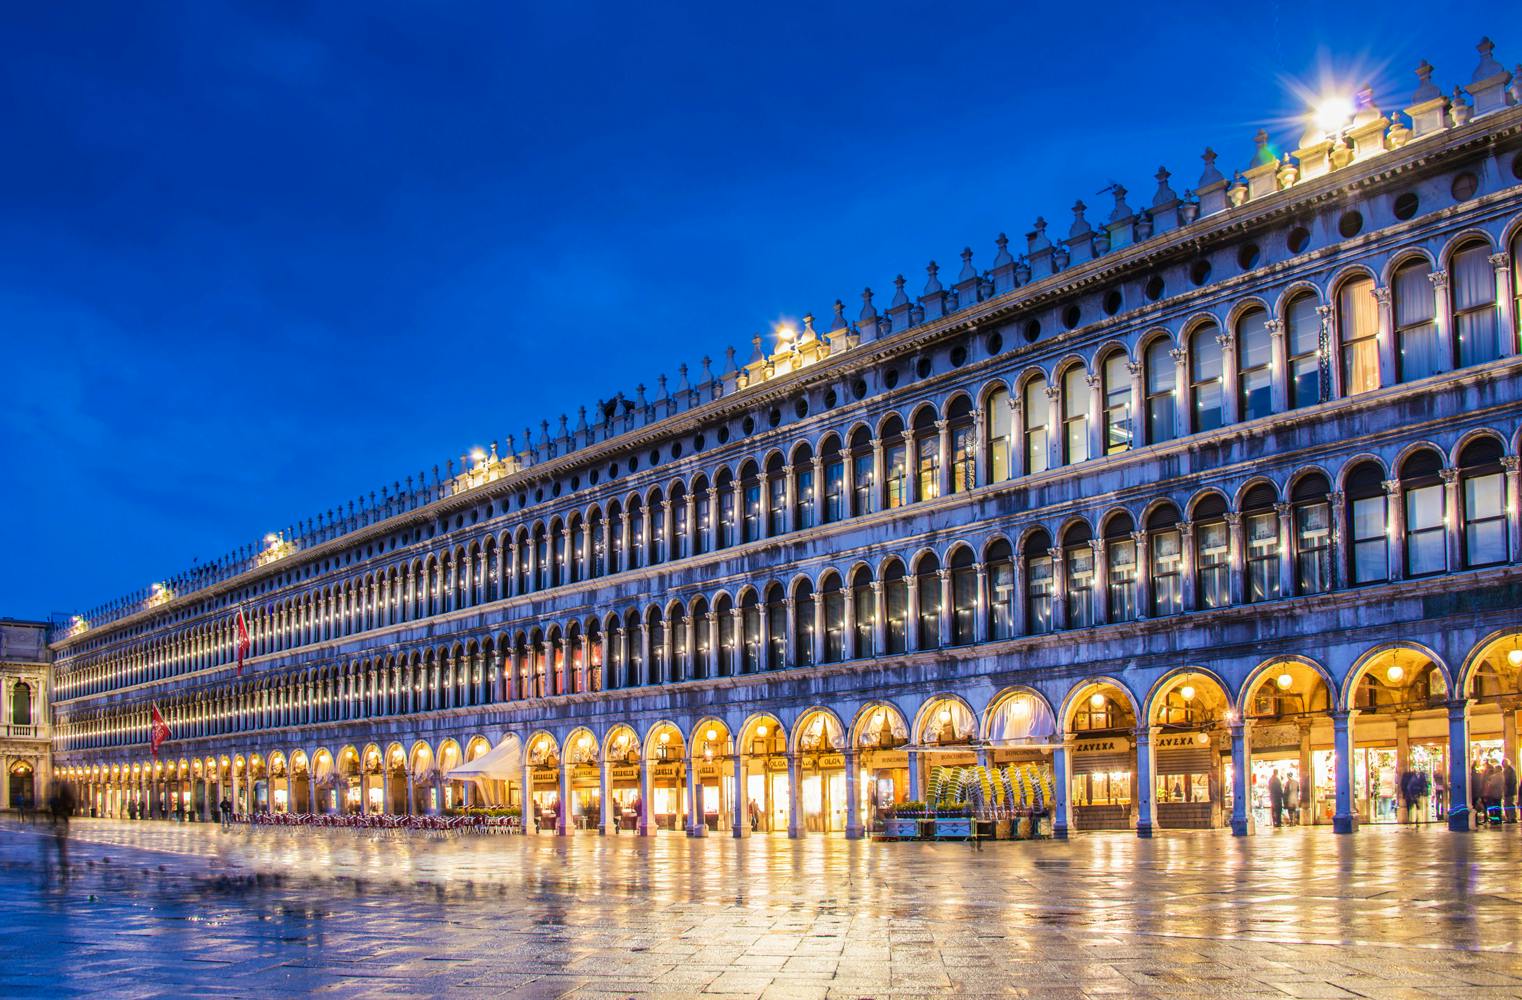 Venedigreise für 2 | mit Murano, Burano und Torcello